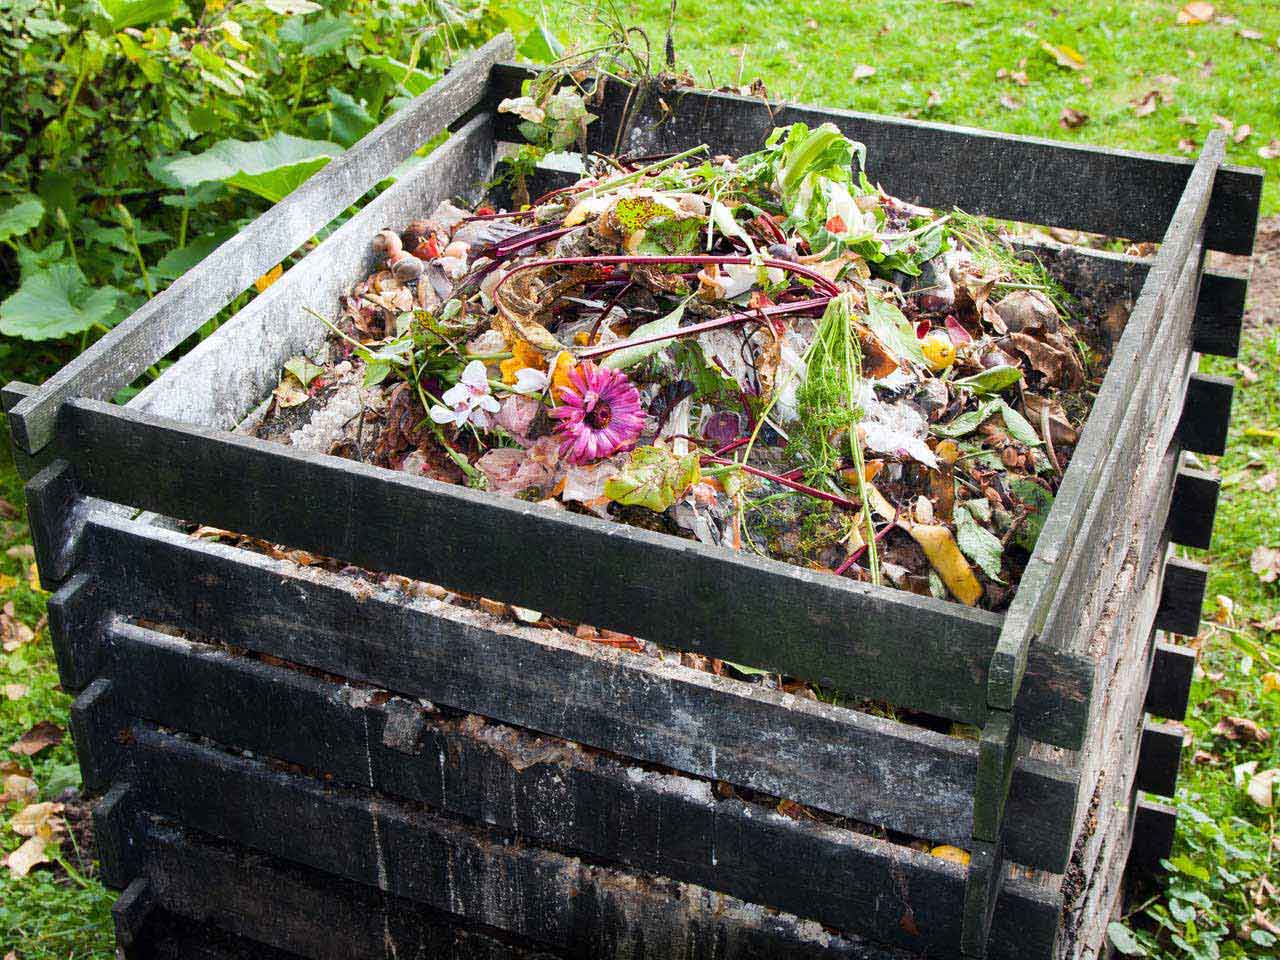 Idée de récup pour un meilleur compost - Gamm vert